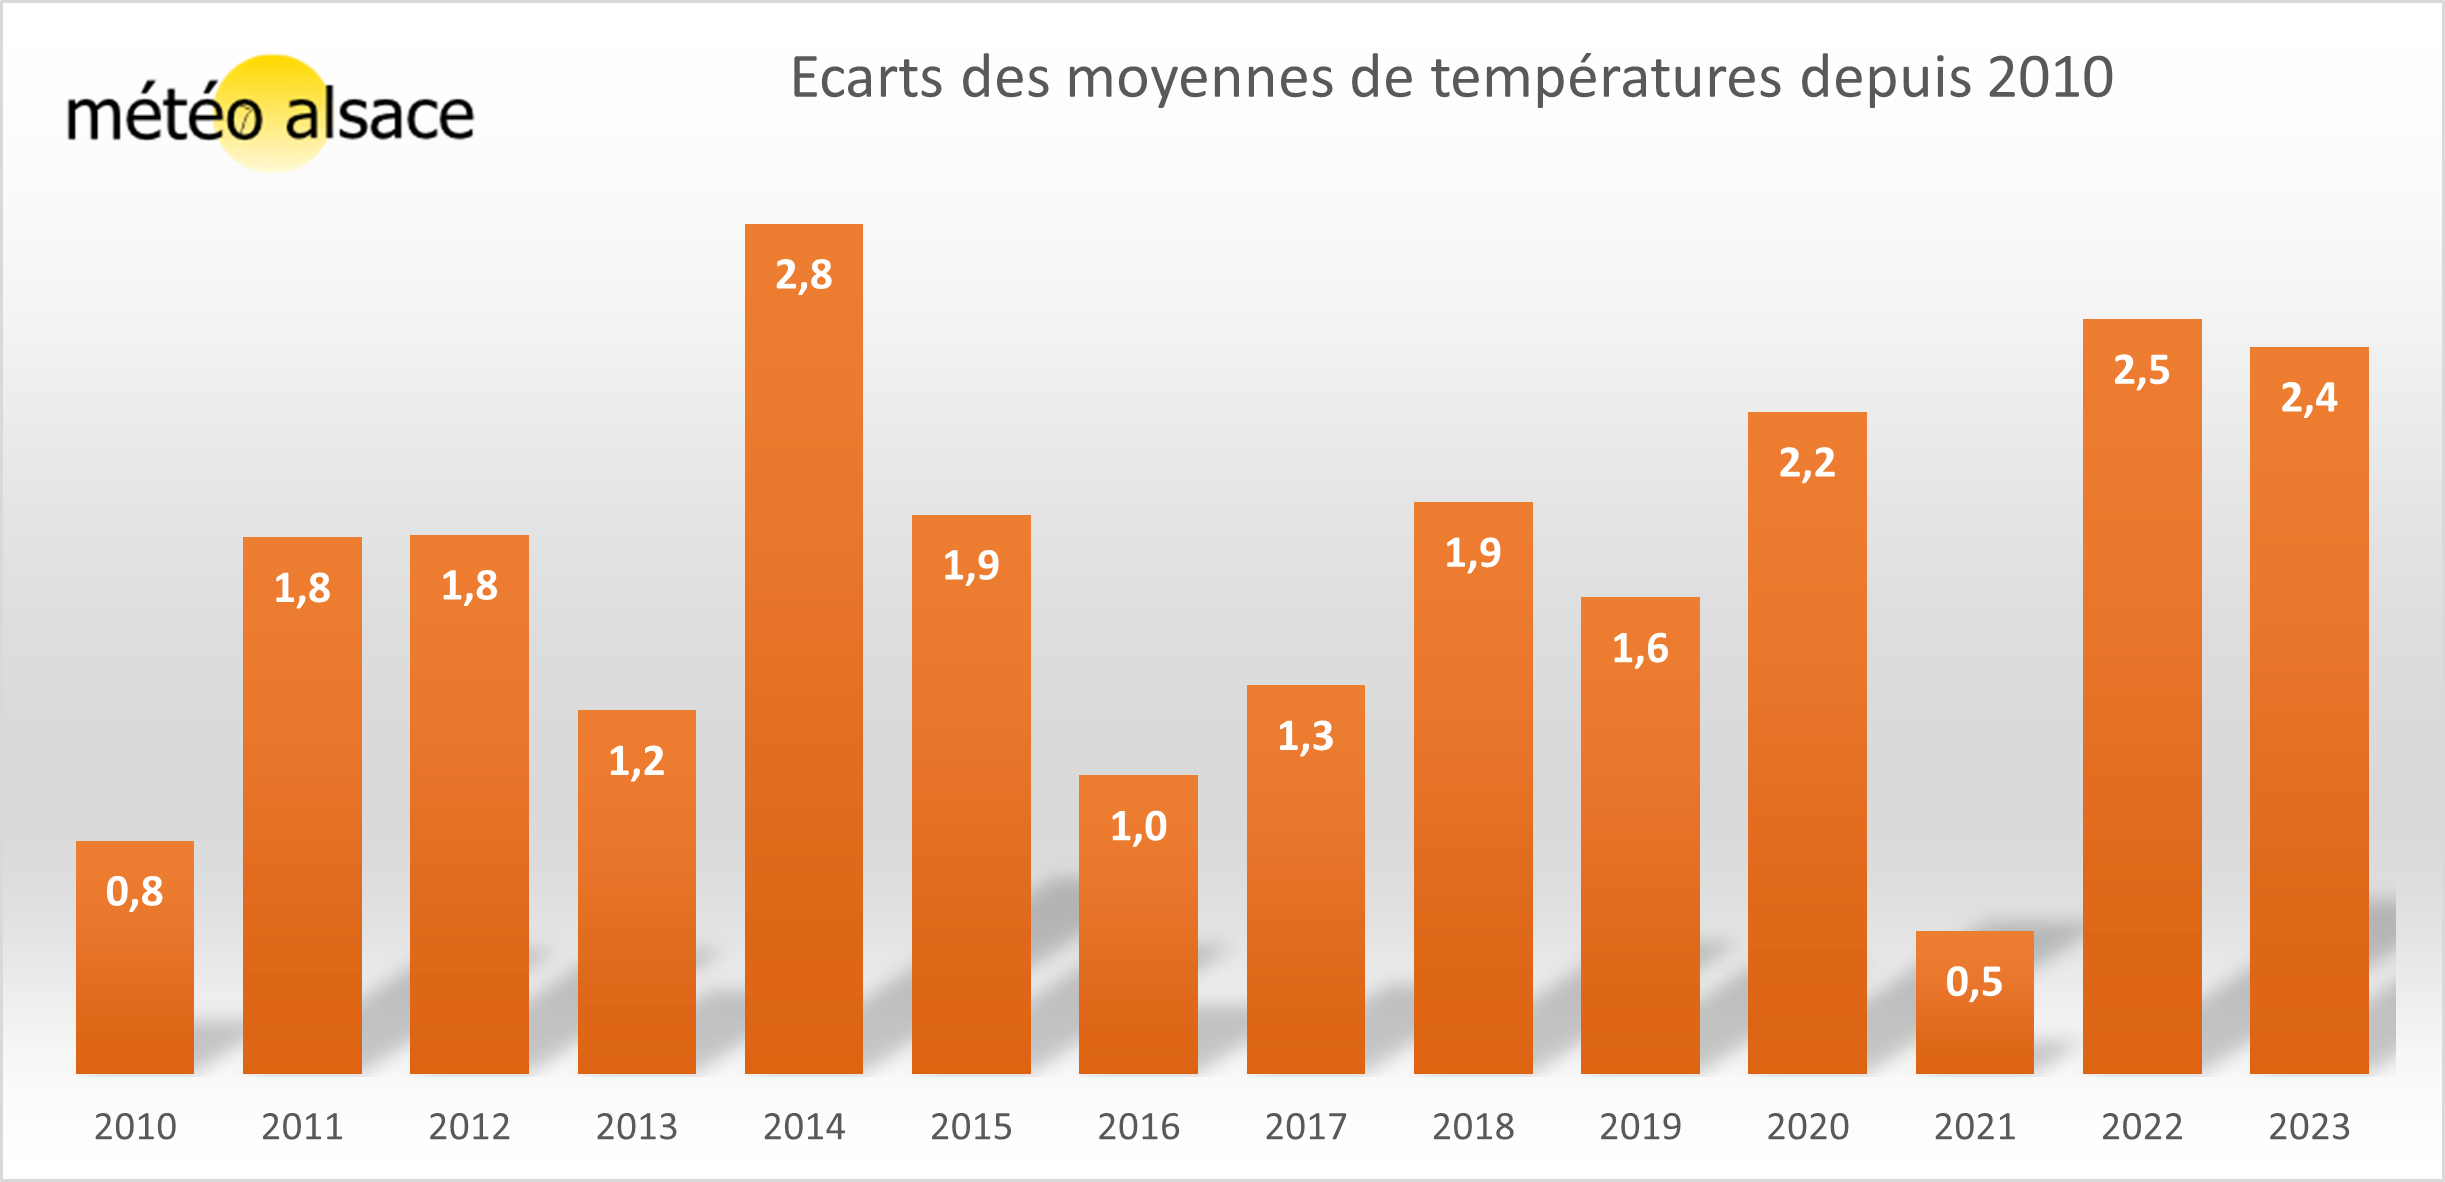 Ecarts des moyennes de températures depuis 2010